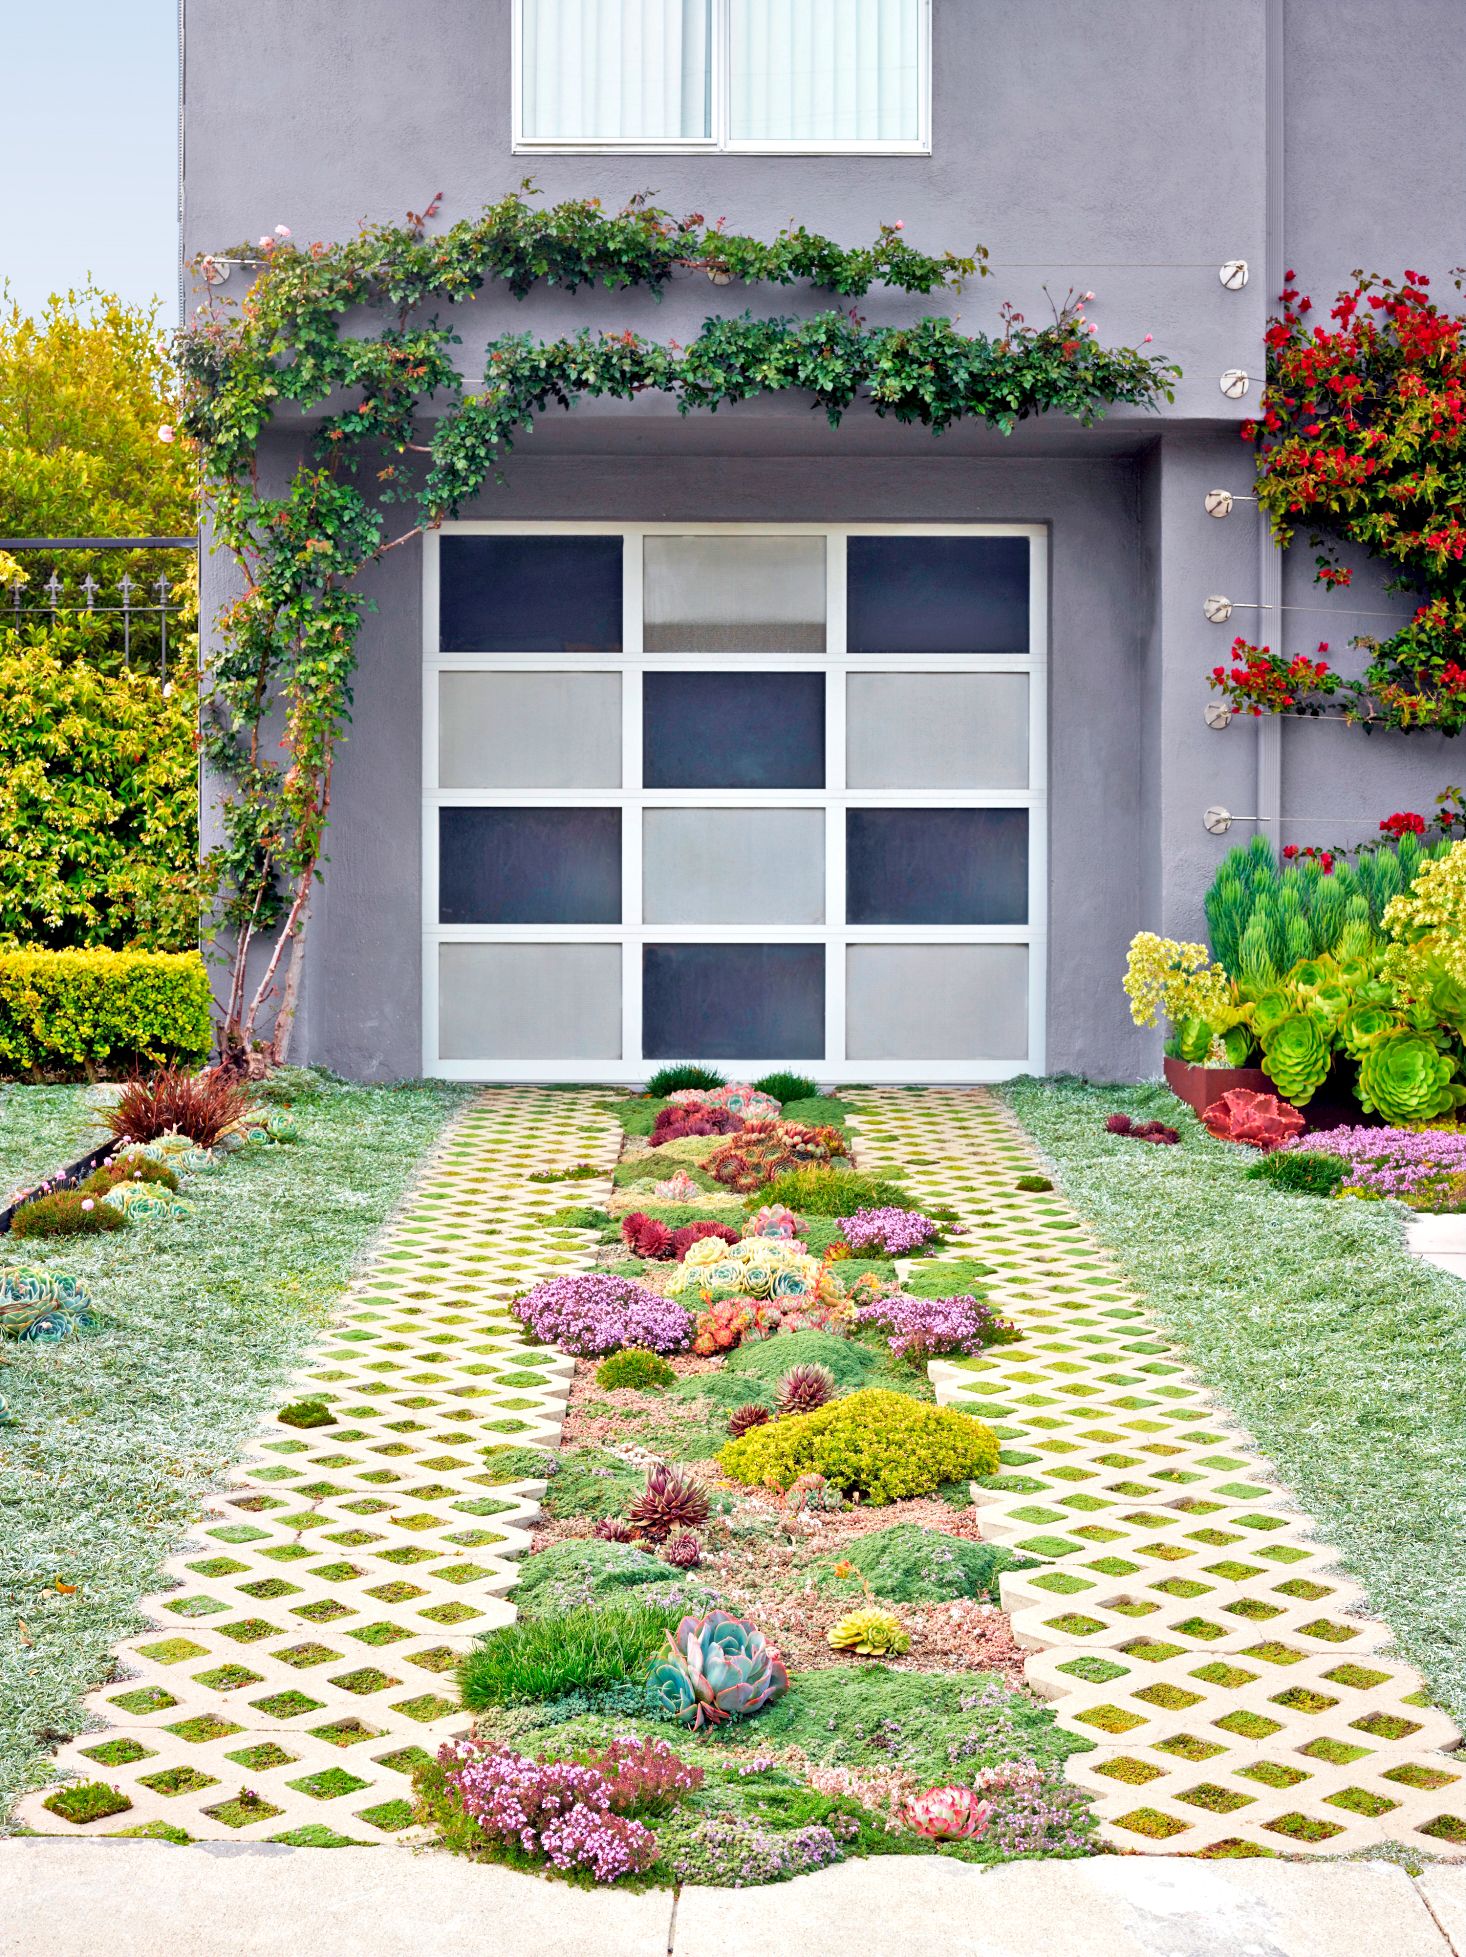 21 Creative Small Garden Ideas   Indoor and Outdoor Garden Designs ...